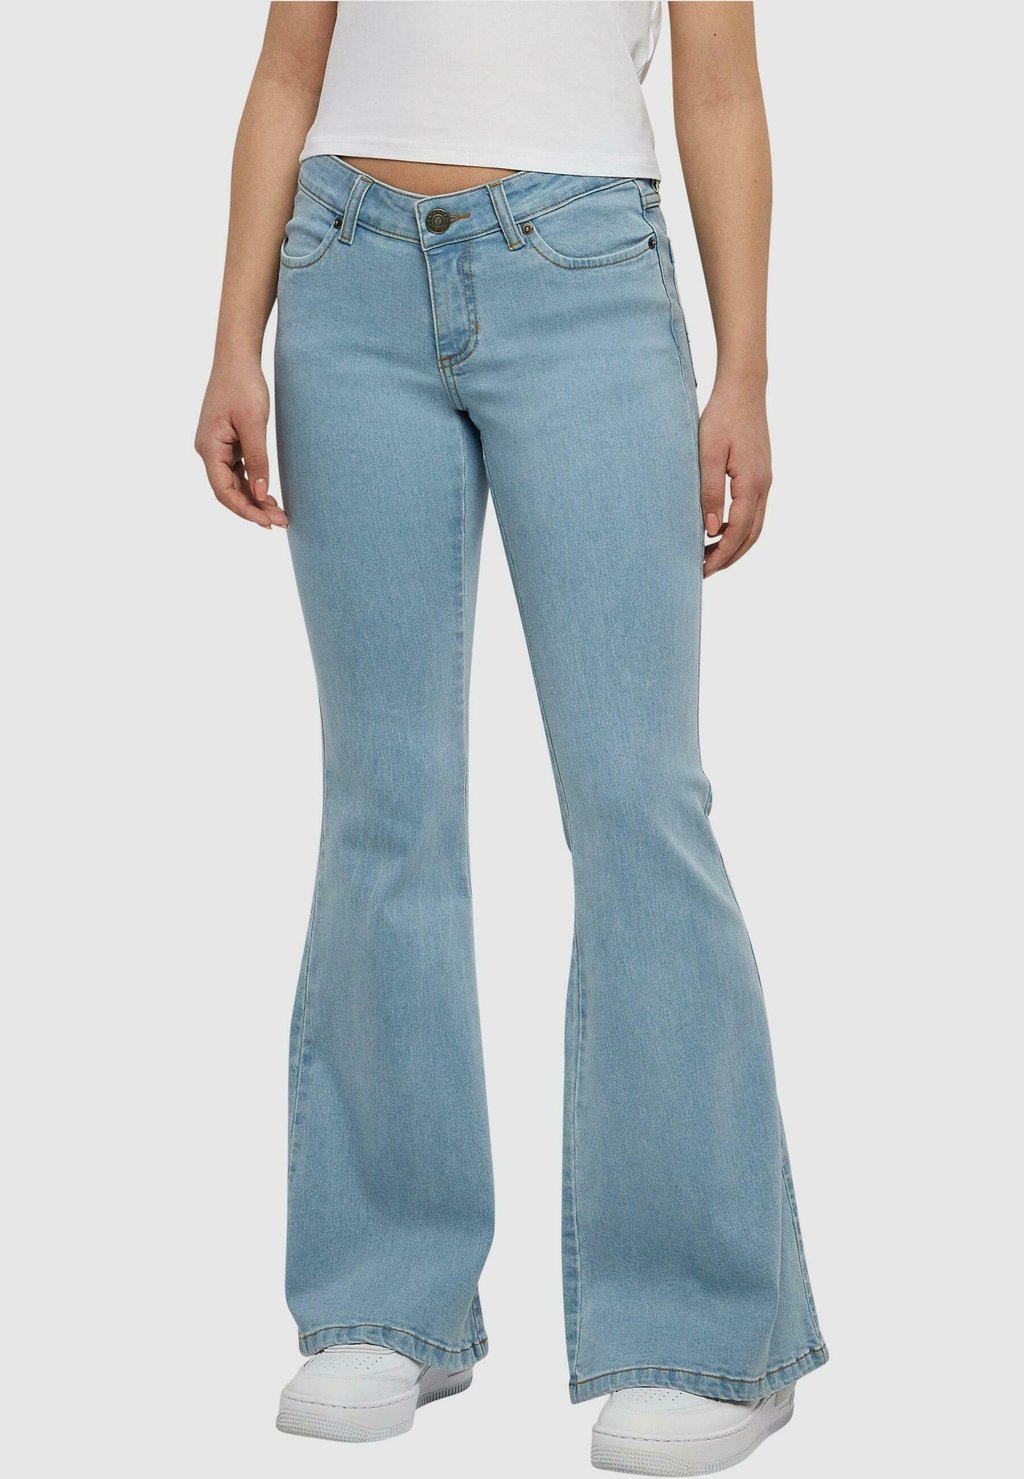 Расклешенные джинсы Urban Classics, более светлые, стираные